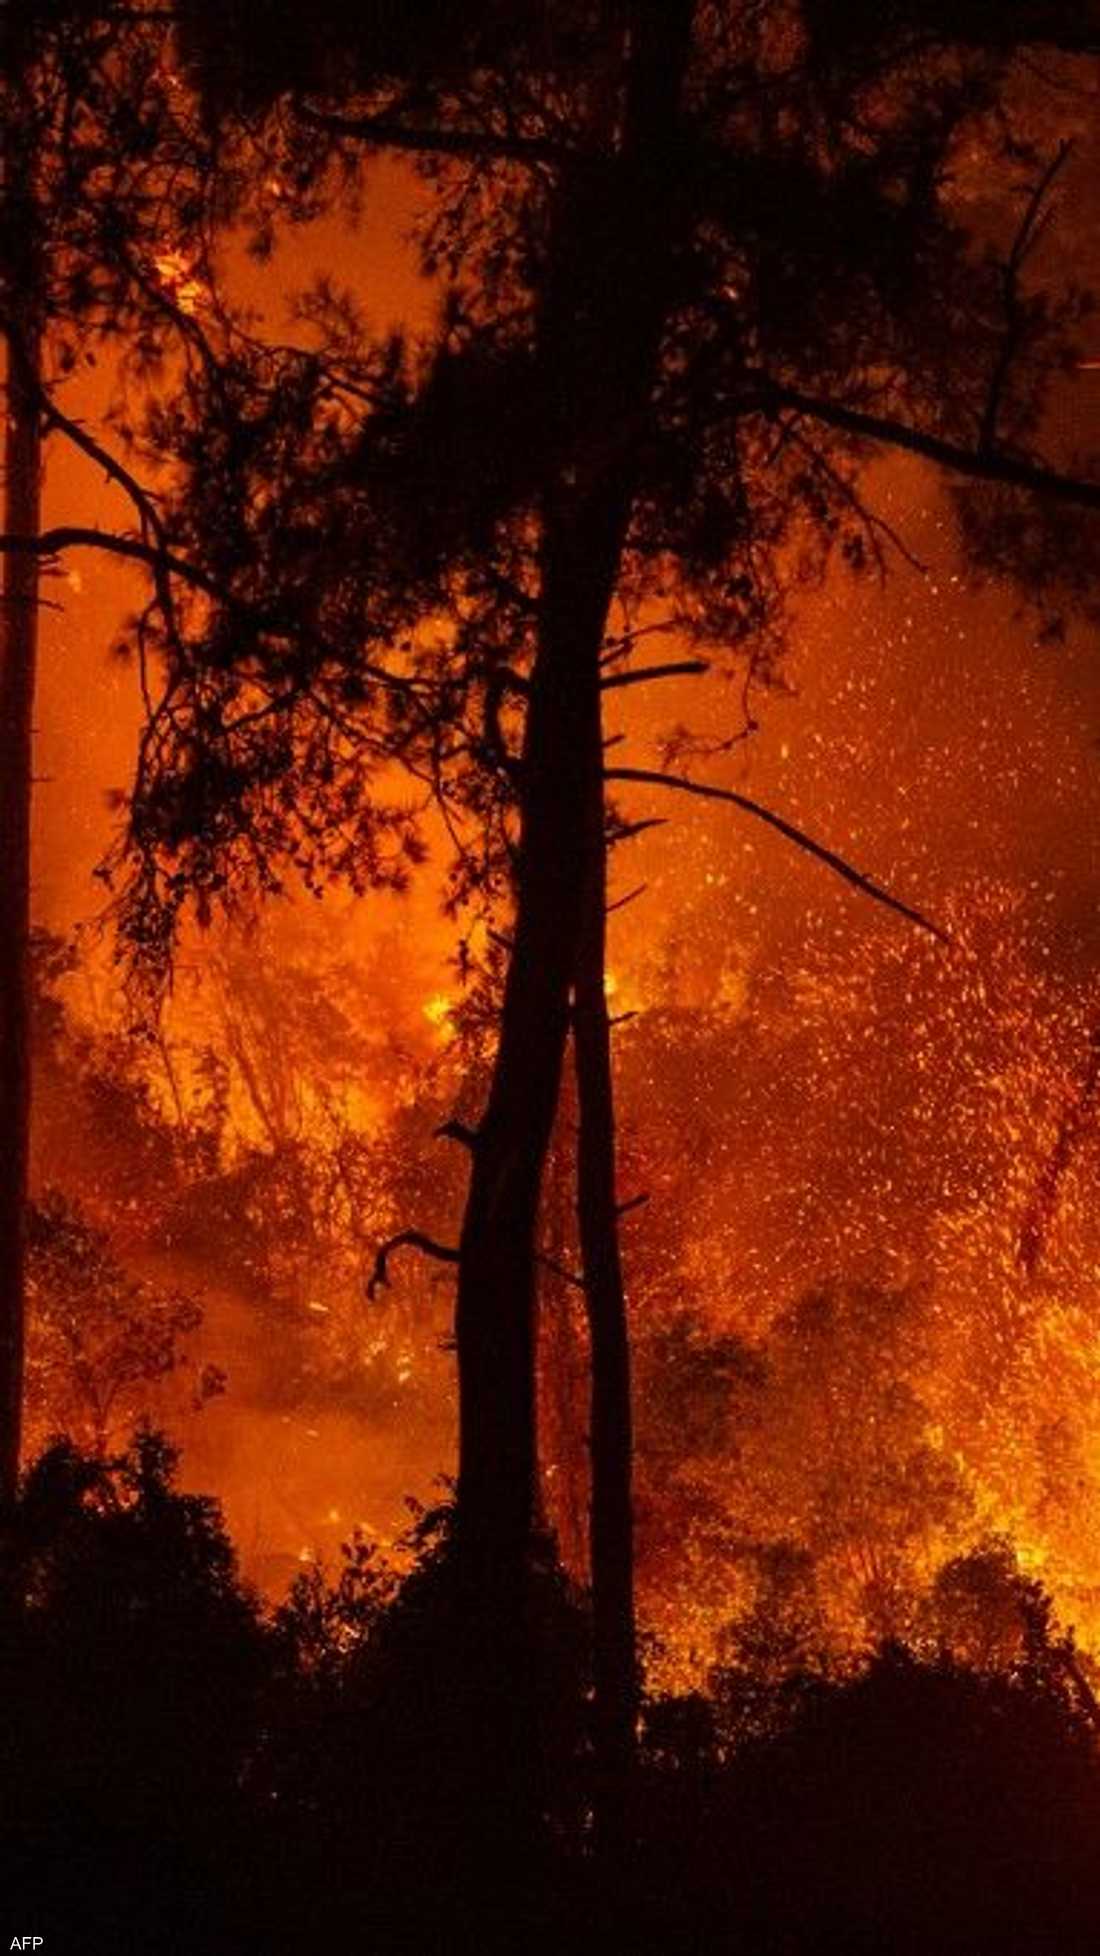 في واحدة من أسوأ الكوارث البيئية على الإطلاق، يتواصل اندلاع حرائق الغابات في منطقة شرق البحر المتوسط، من تركيا إلى اليونان وإيطاليا.